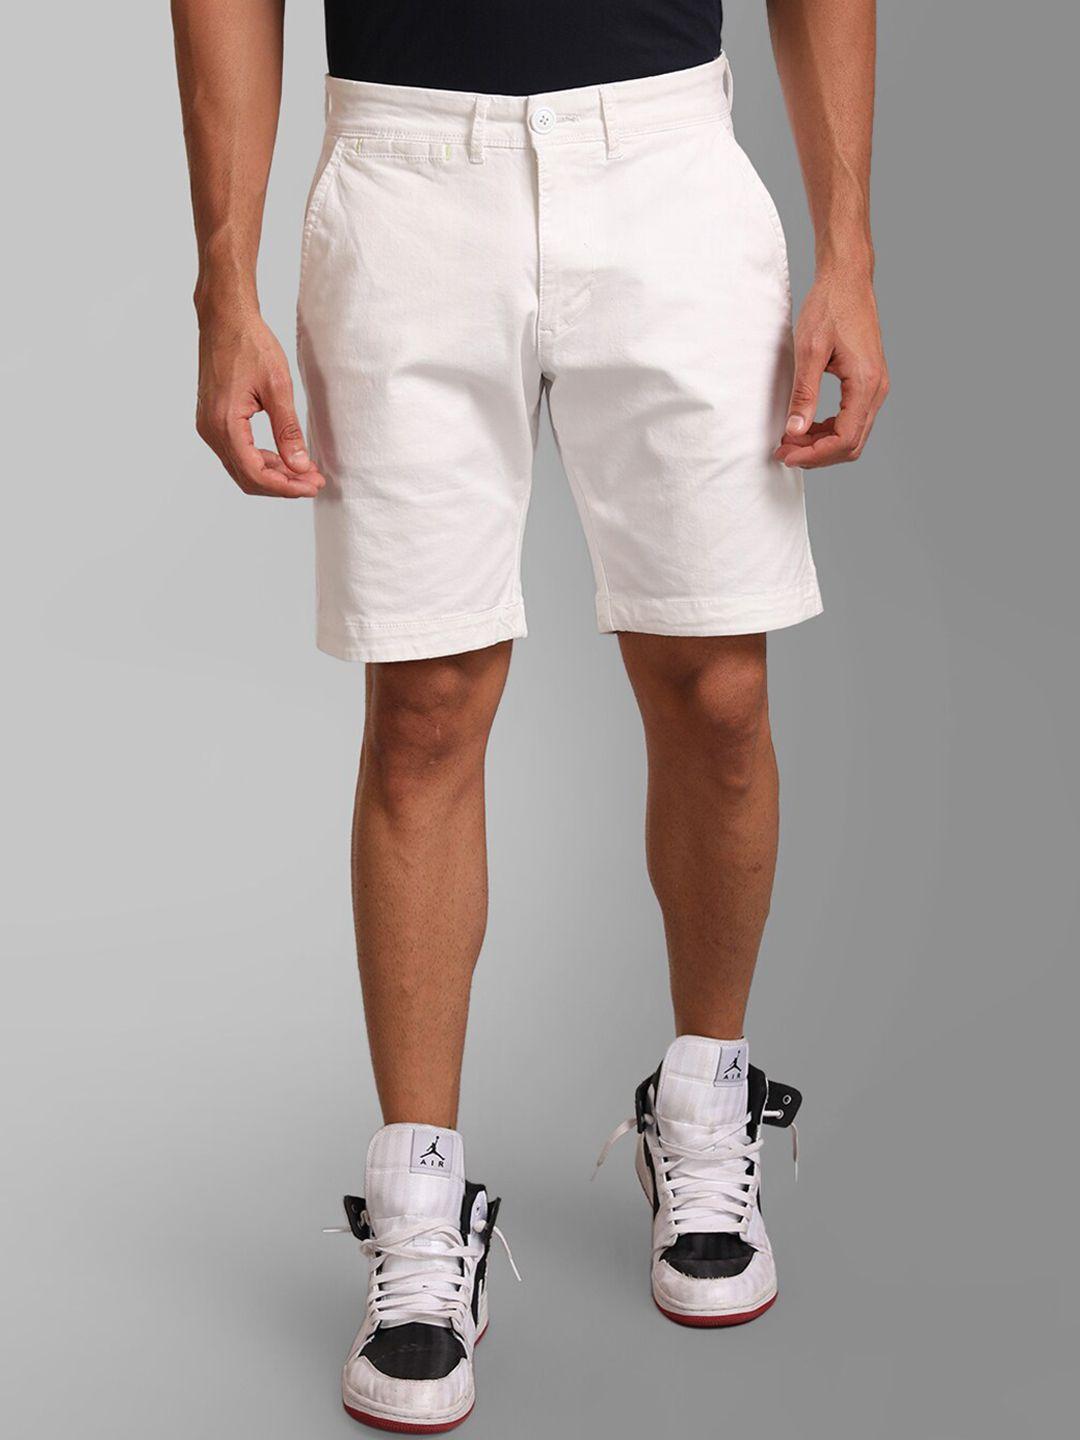 kz07 by kazo men white high-rise sports shorts